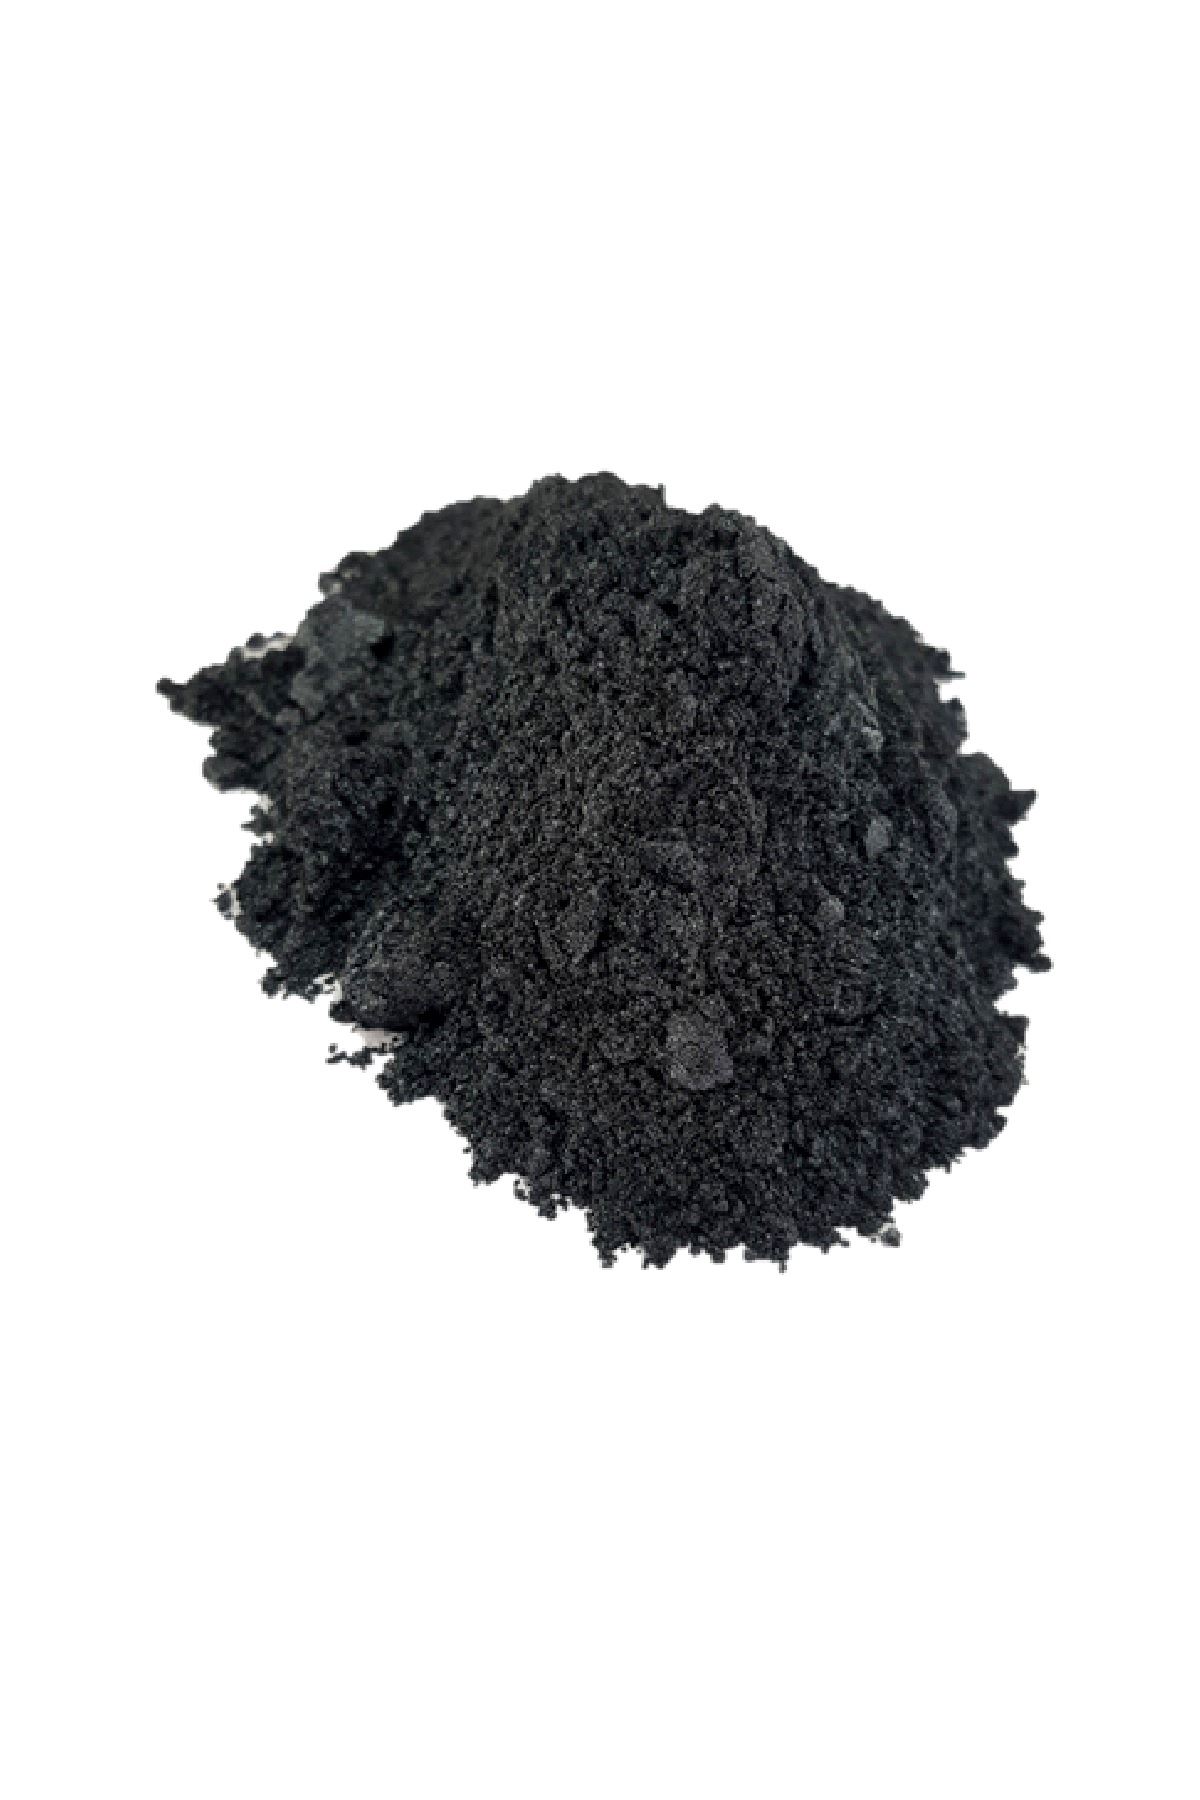 Brtr 10 Gr Siyah Ocean Epoksi Metalik Toz Pigment